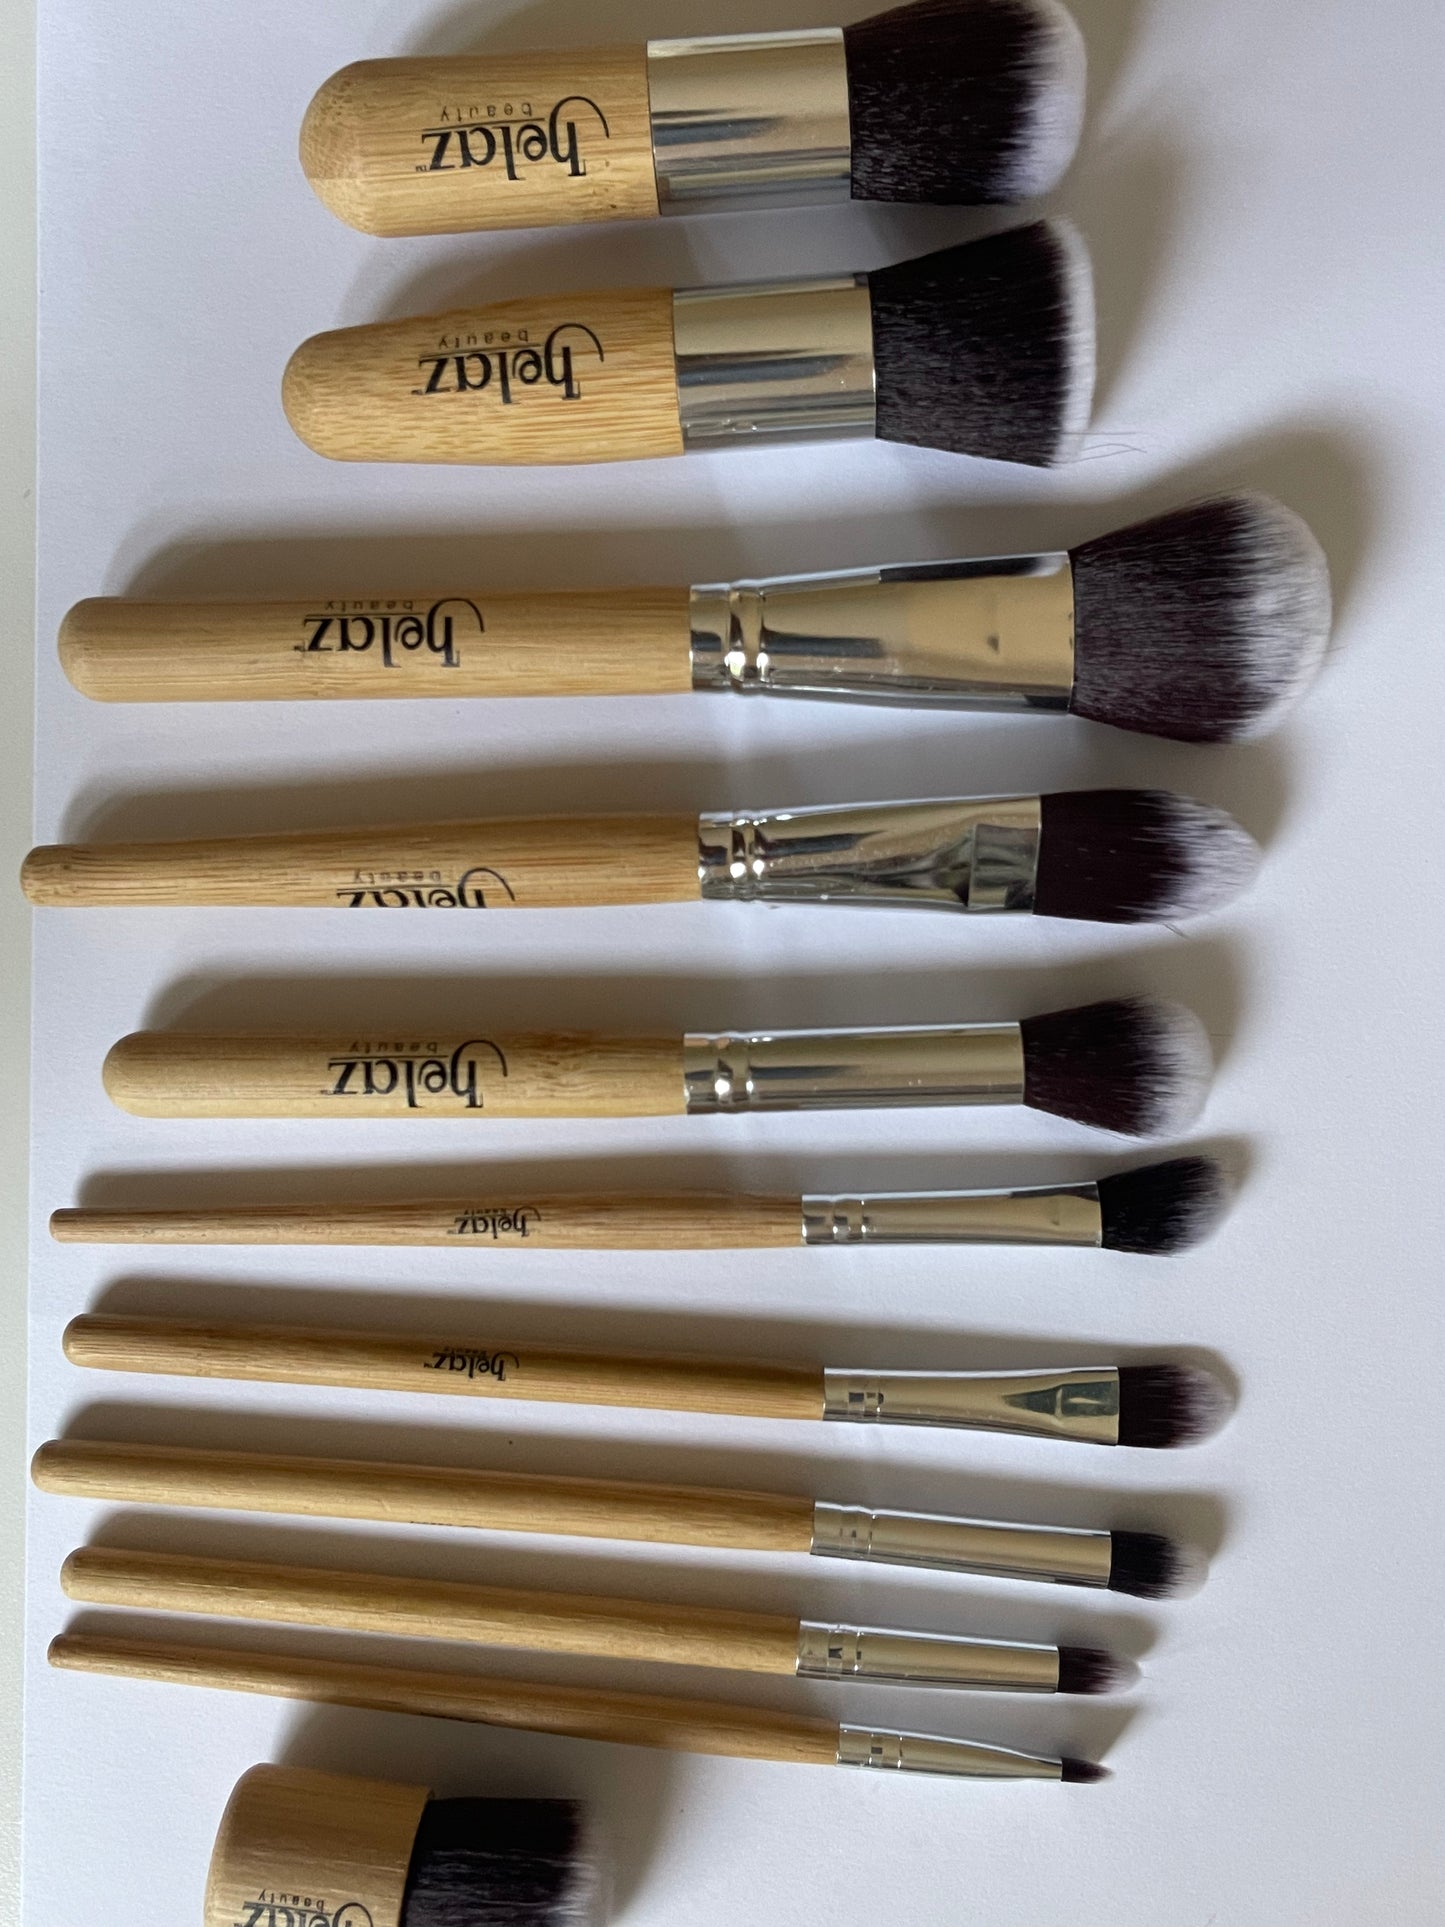 11 Pieces Makeup Brush Set